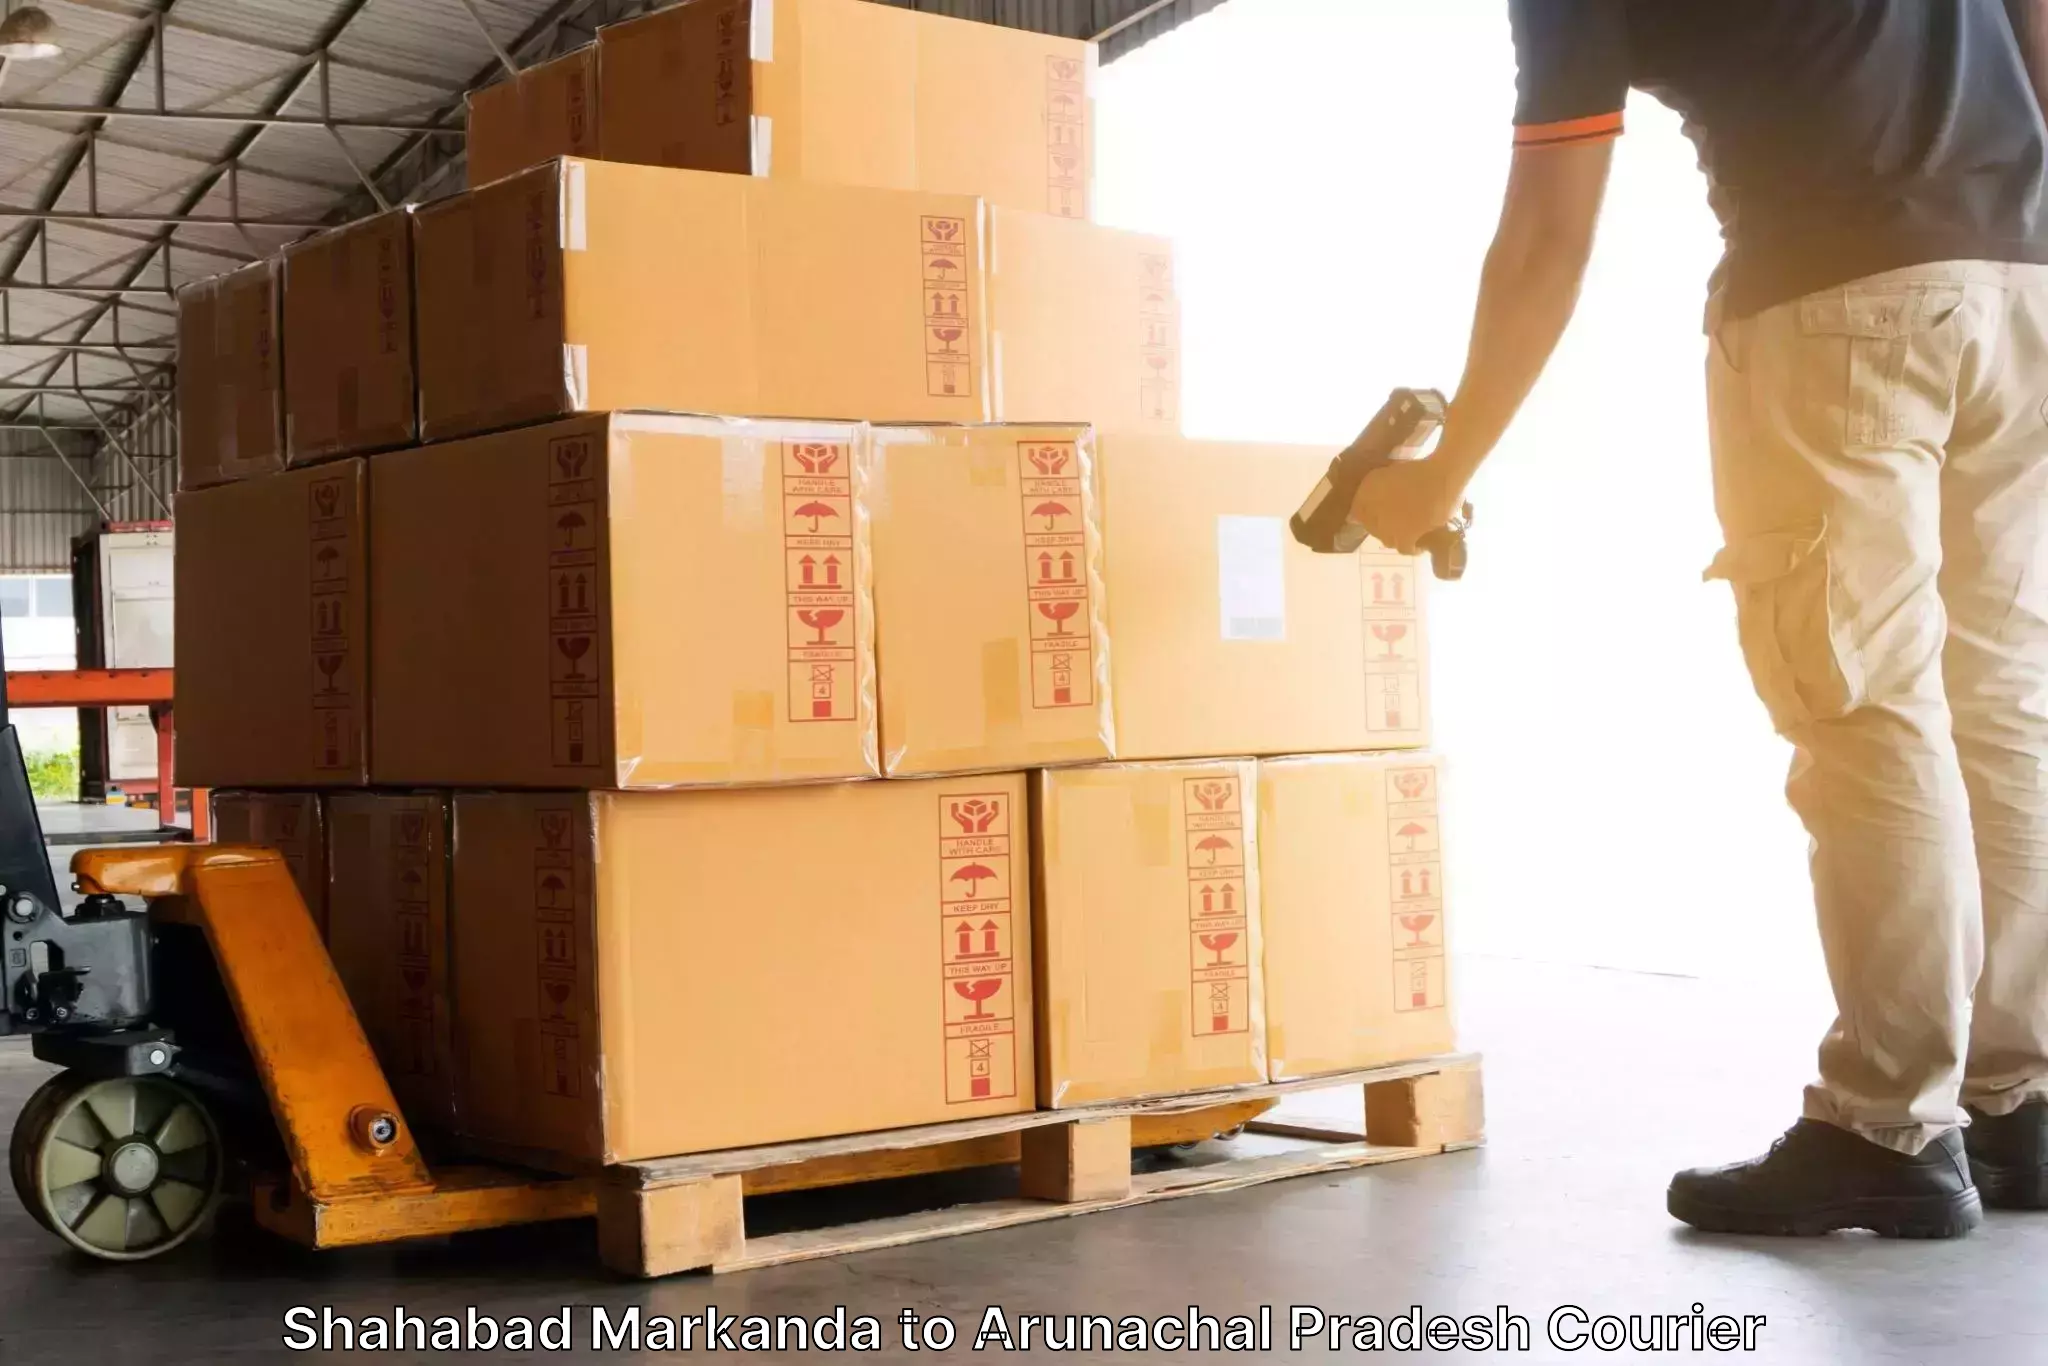 Express mail solutions Shahabad Markanda to Changlang